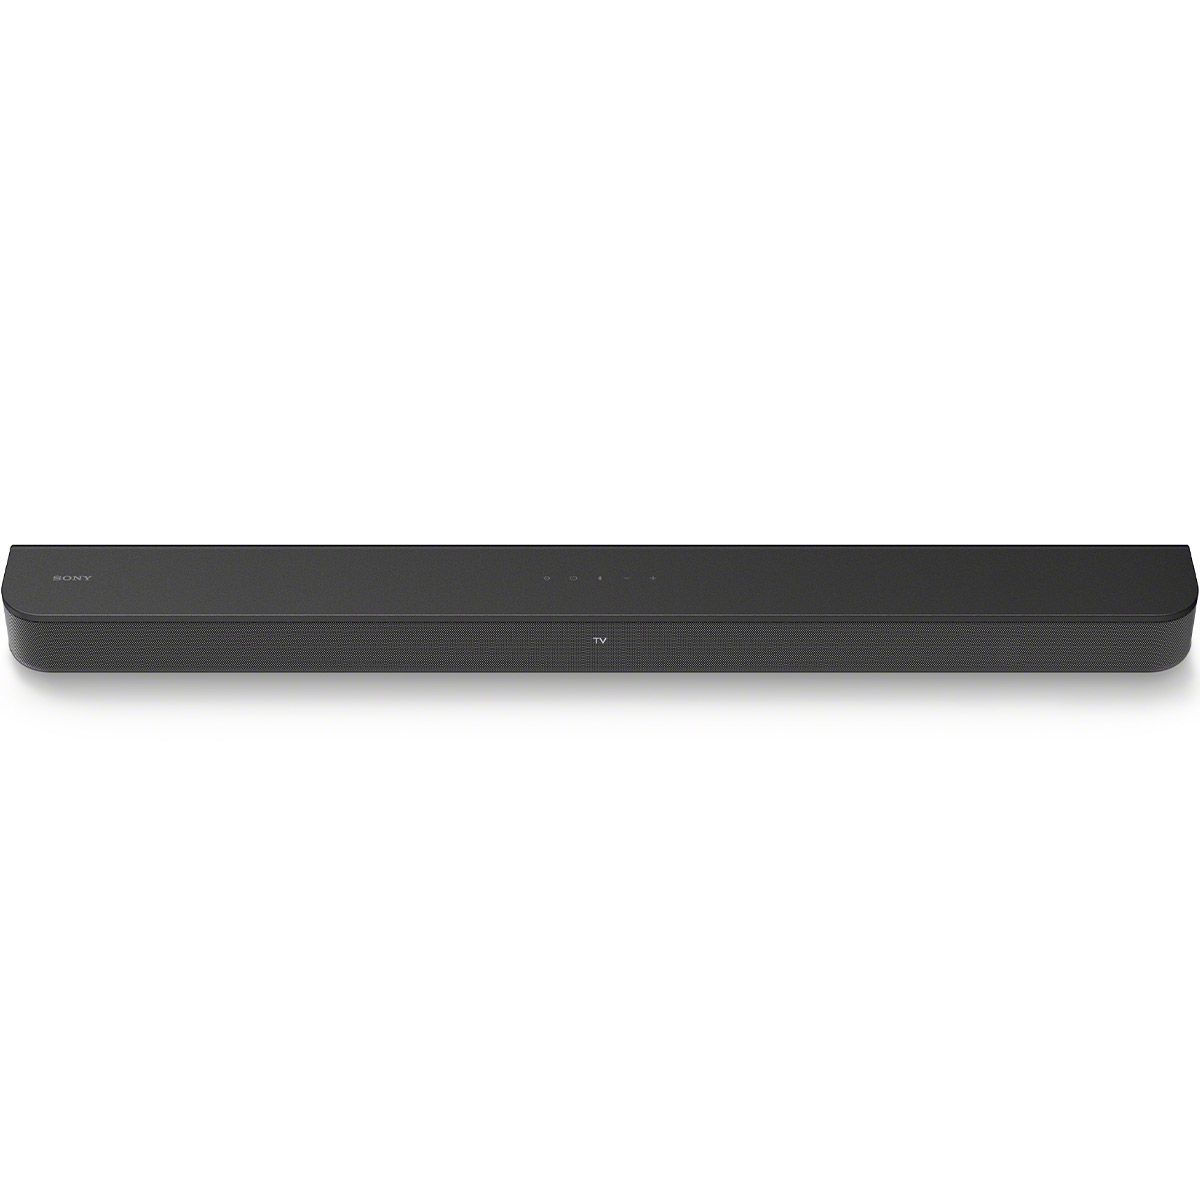 Sony HTS400 2.1ch Soundbar w/ Wireless Subwoofer - front view of soundbar